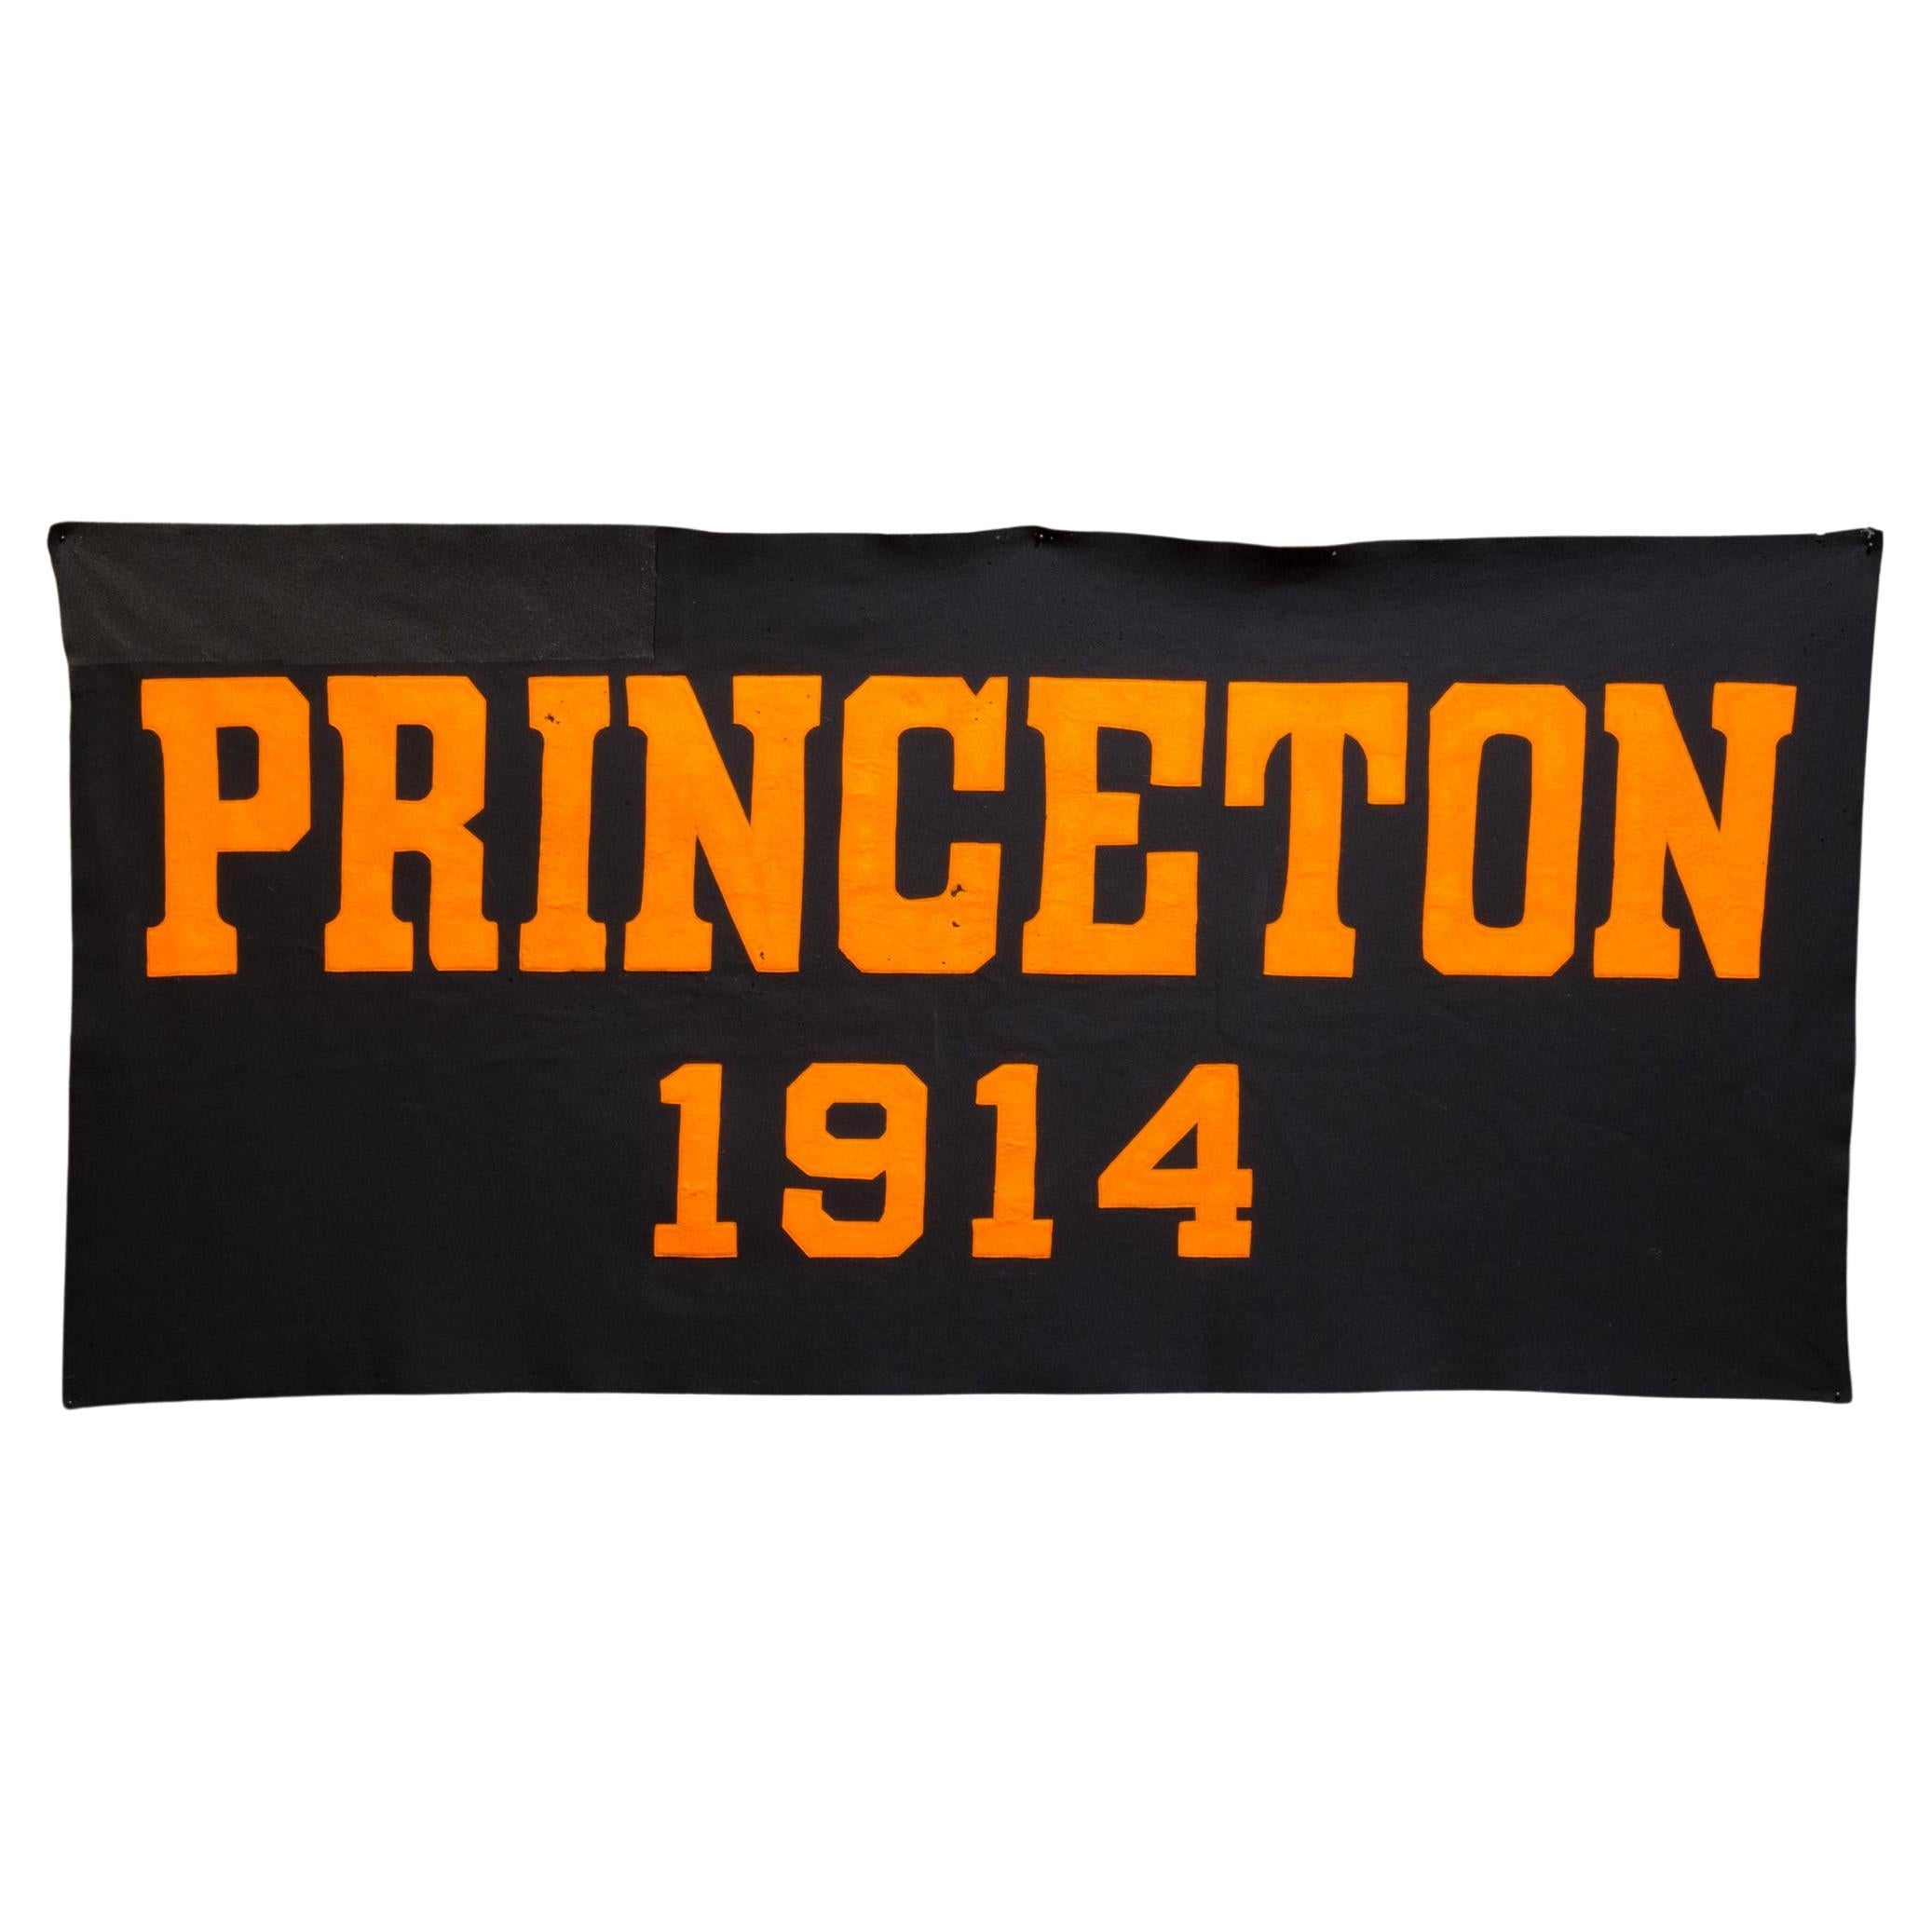 Großes Banner der Princeton University, ca.1914  